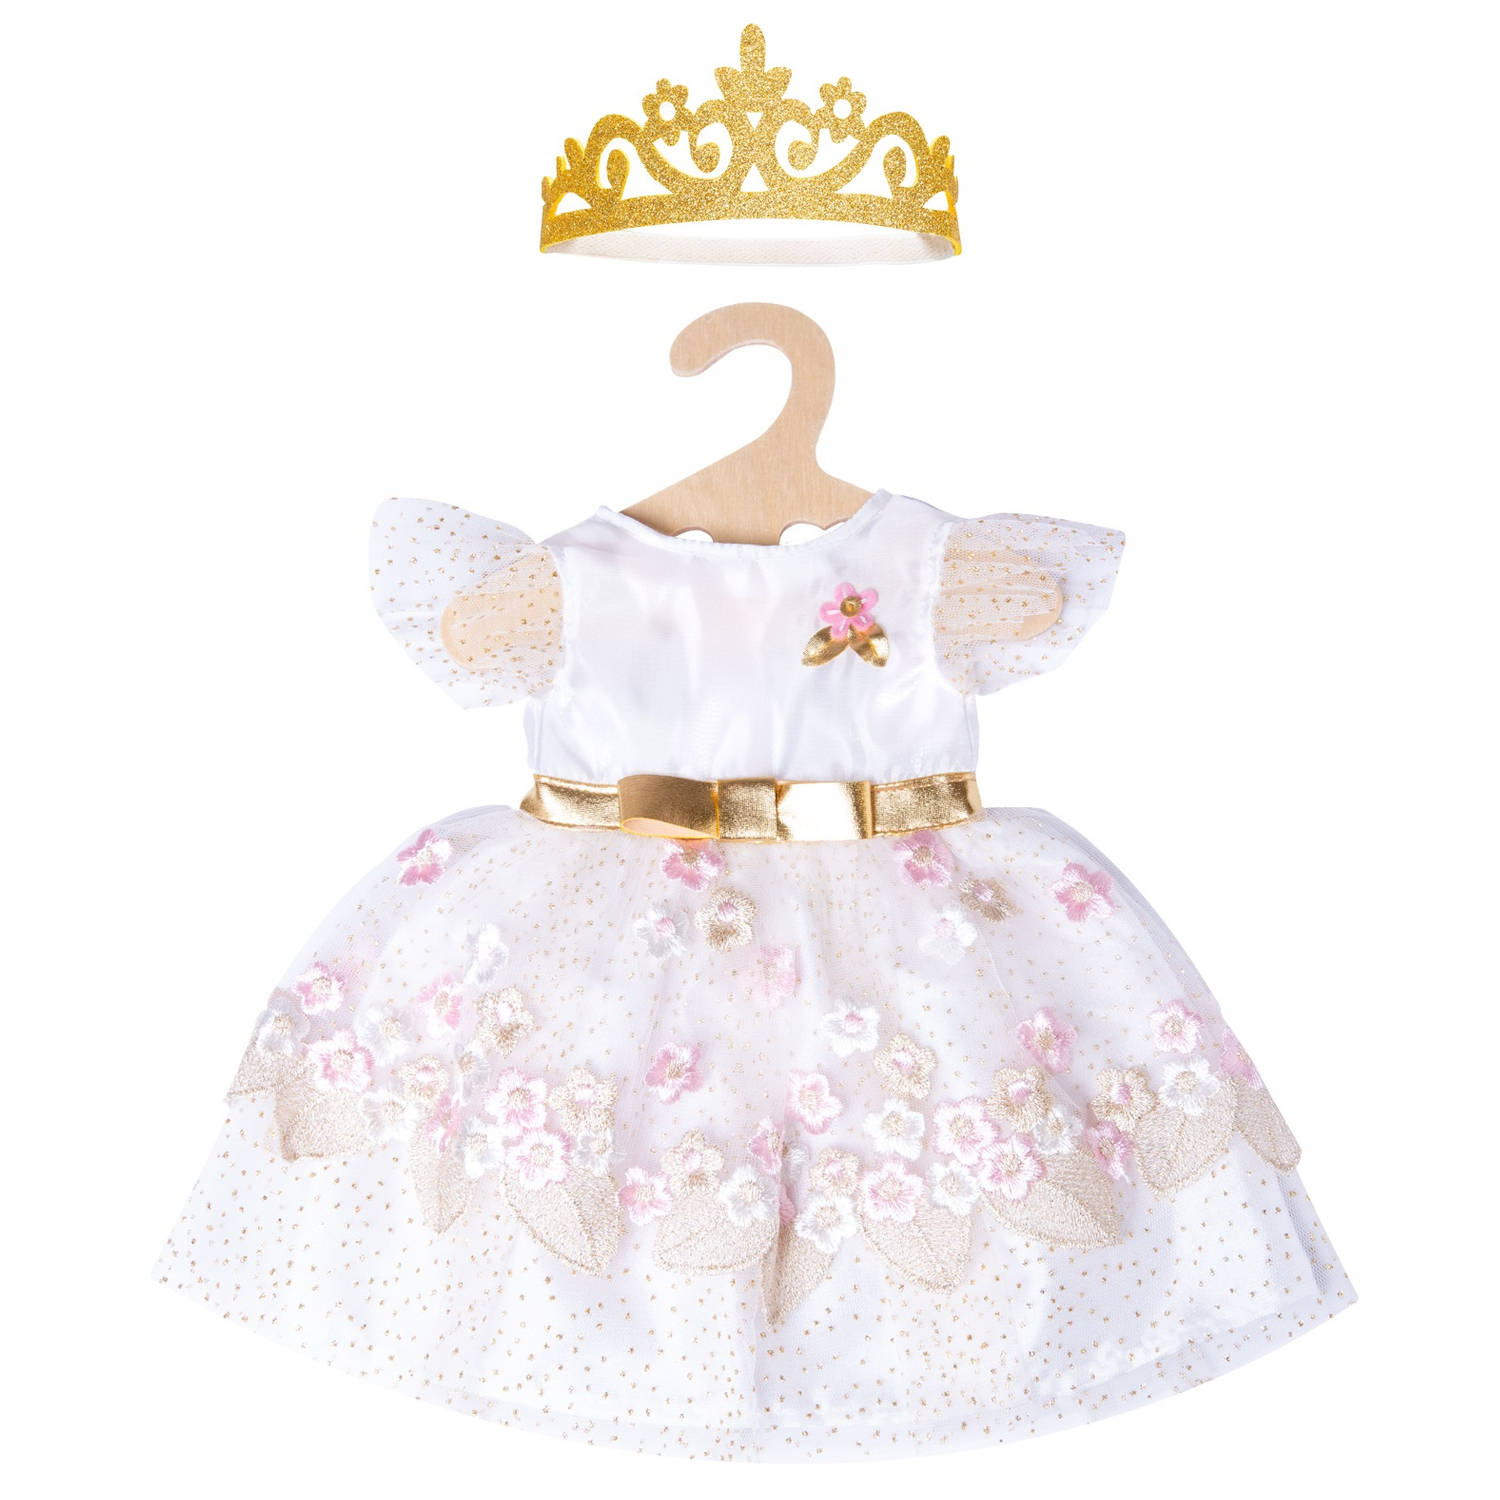 Heless babypoppenkleding prinsessenjurk 28-35 cm roze 2-delig